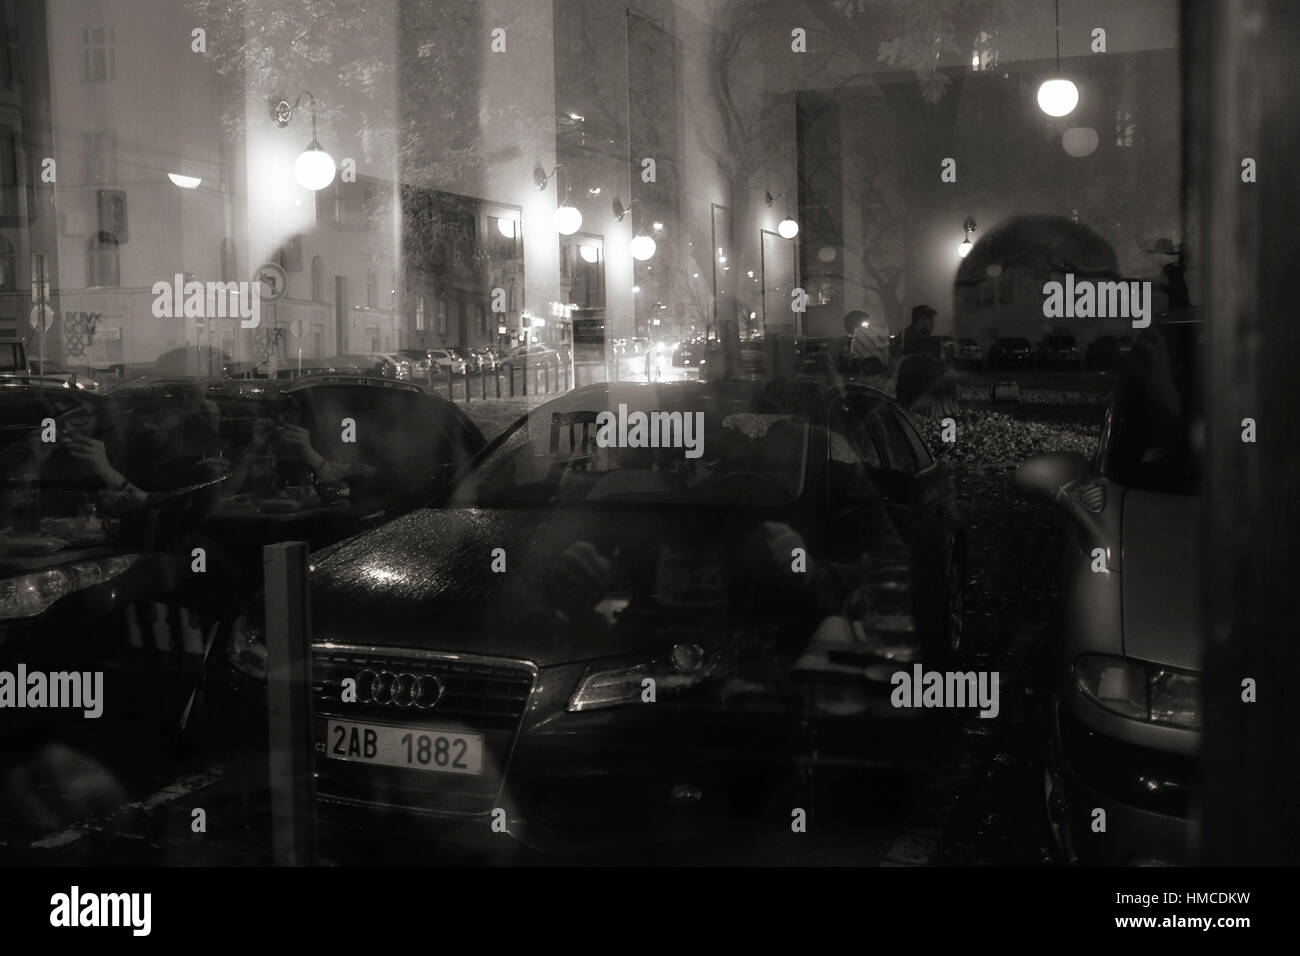 Praga, Repubblica Ceca - 18 novembre 2014: la riflessione di persone che parlano e luci su una finestra della barra di Cafe e liberali e auto su una strada di notte Foto Stock